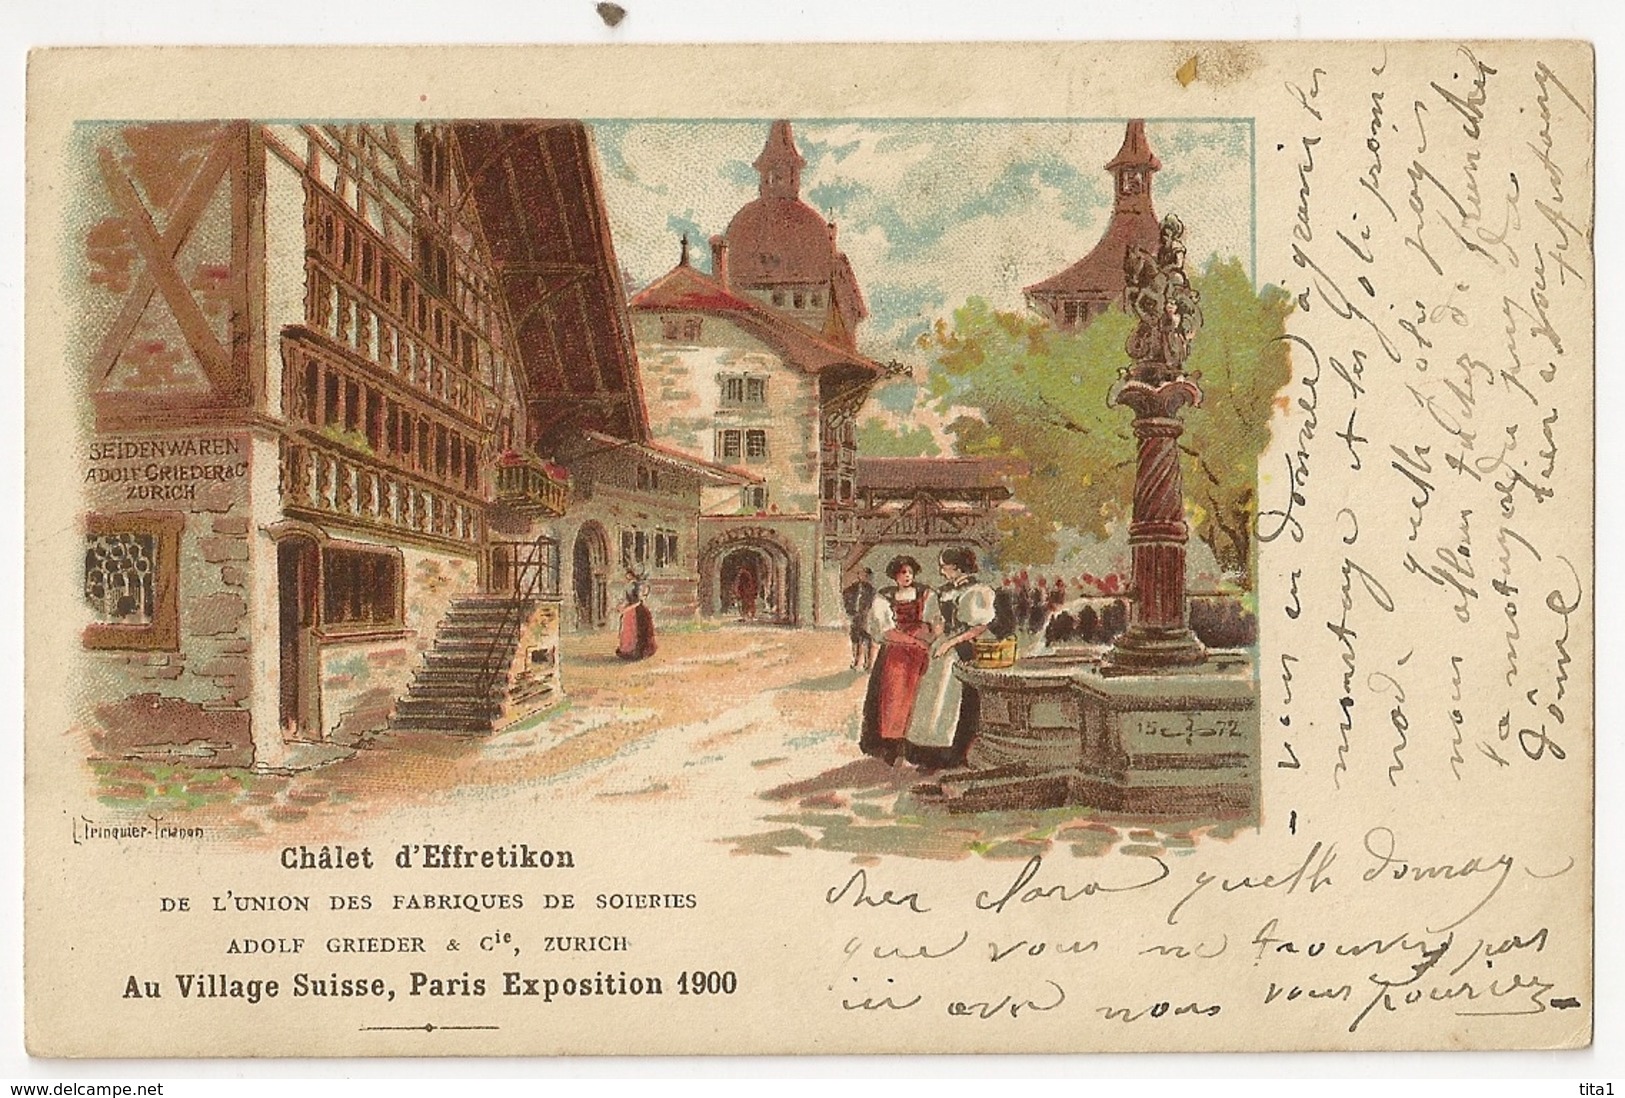 S7674 - Paris Exposition 1900 - Chalet D' Effretikon De L'Union Des Fabriques De Soieries Adolf Grieder Zurich - - Expositions